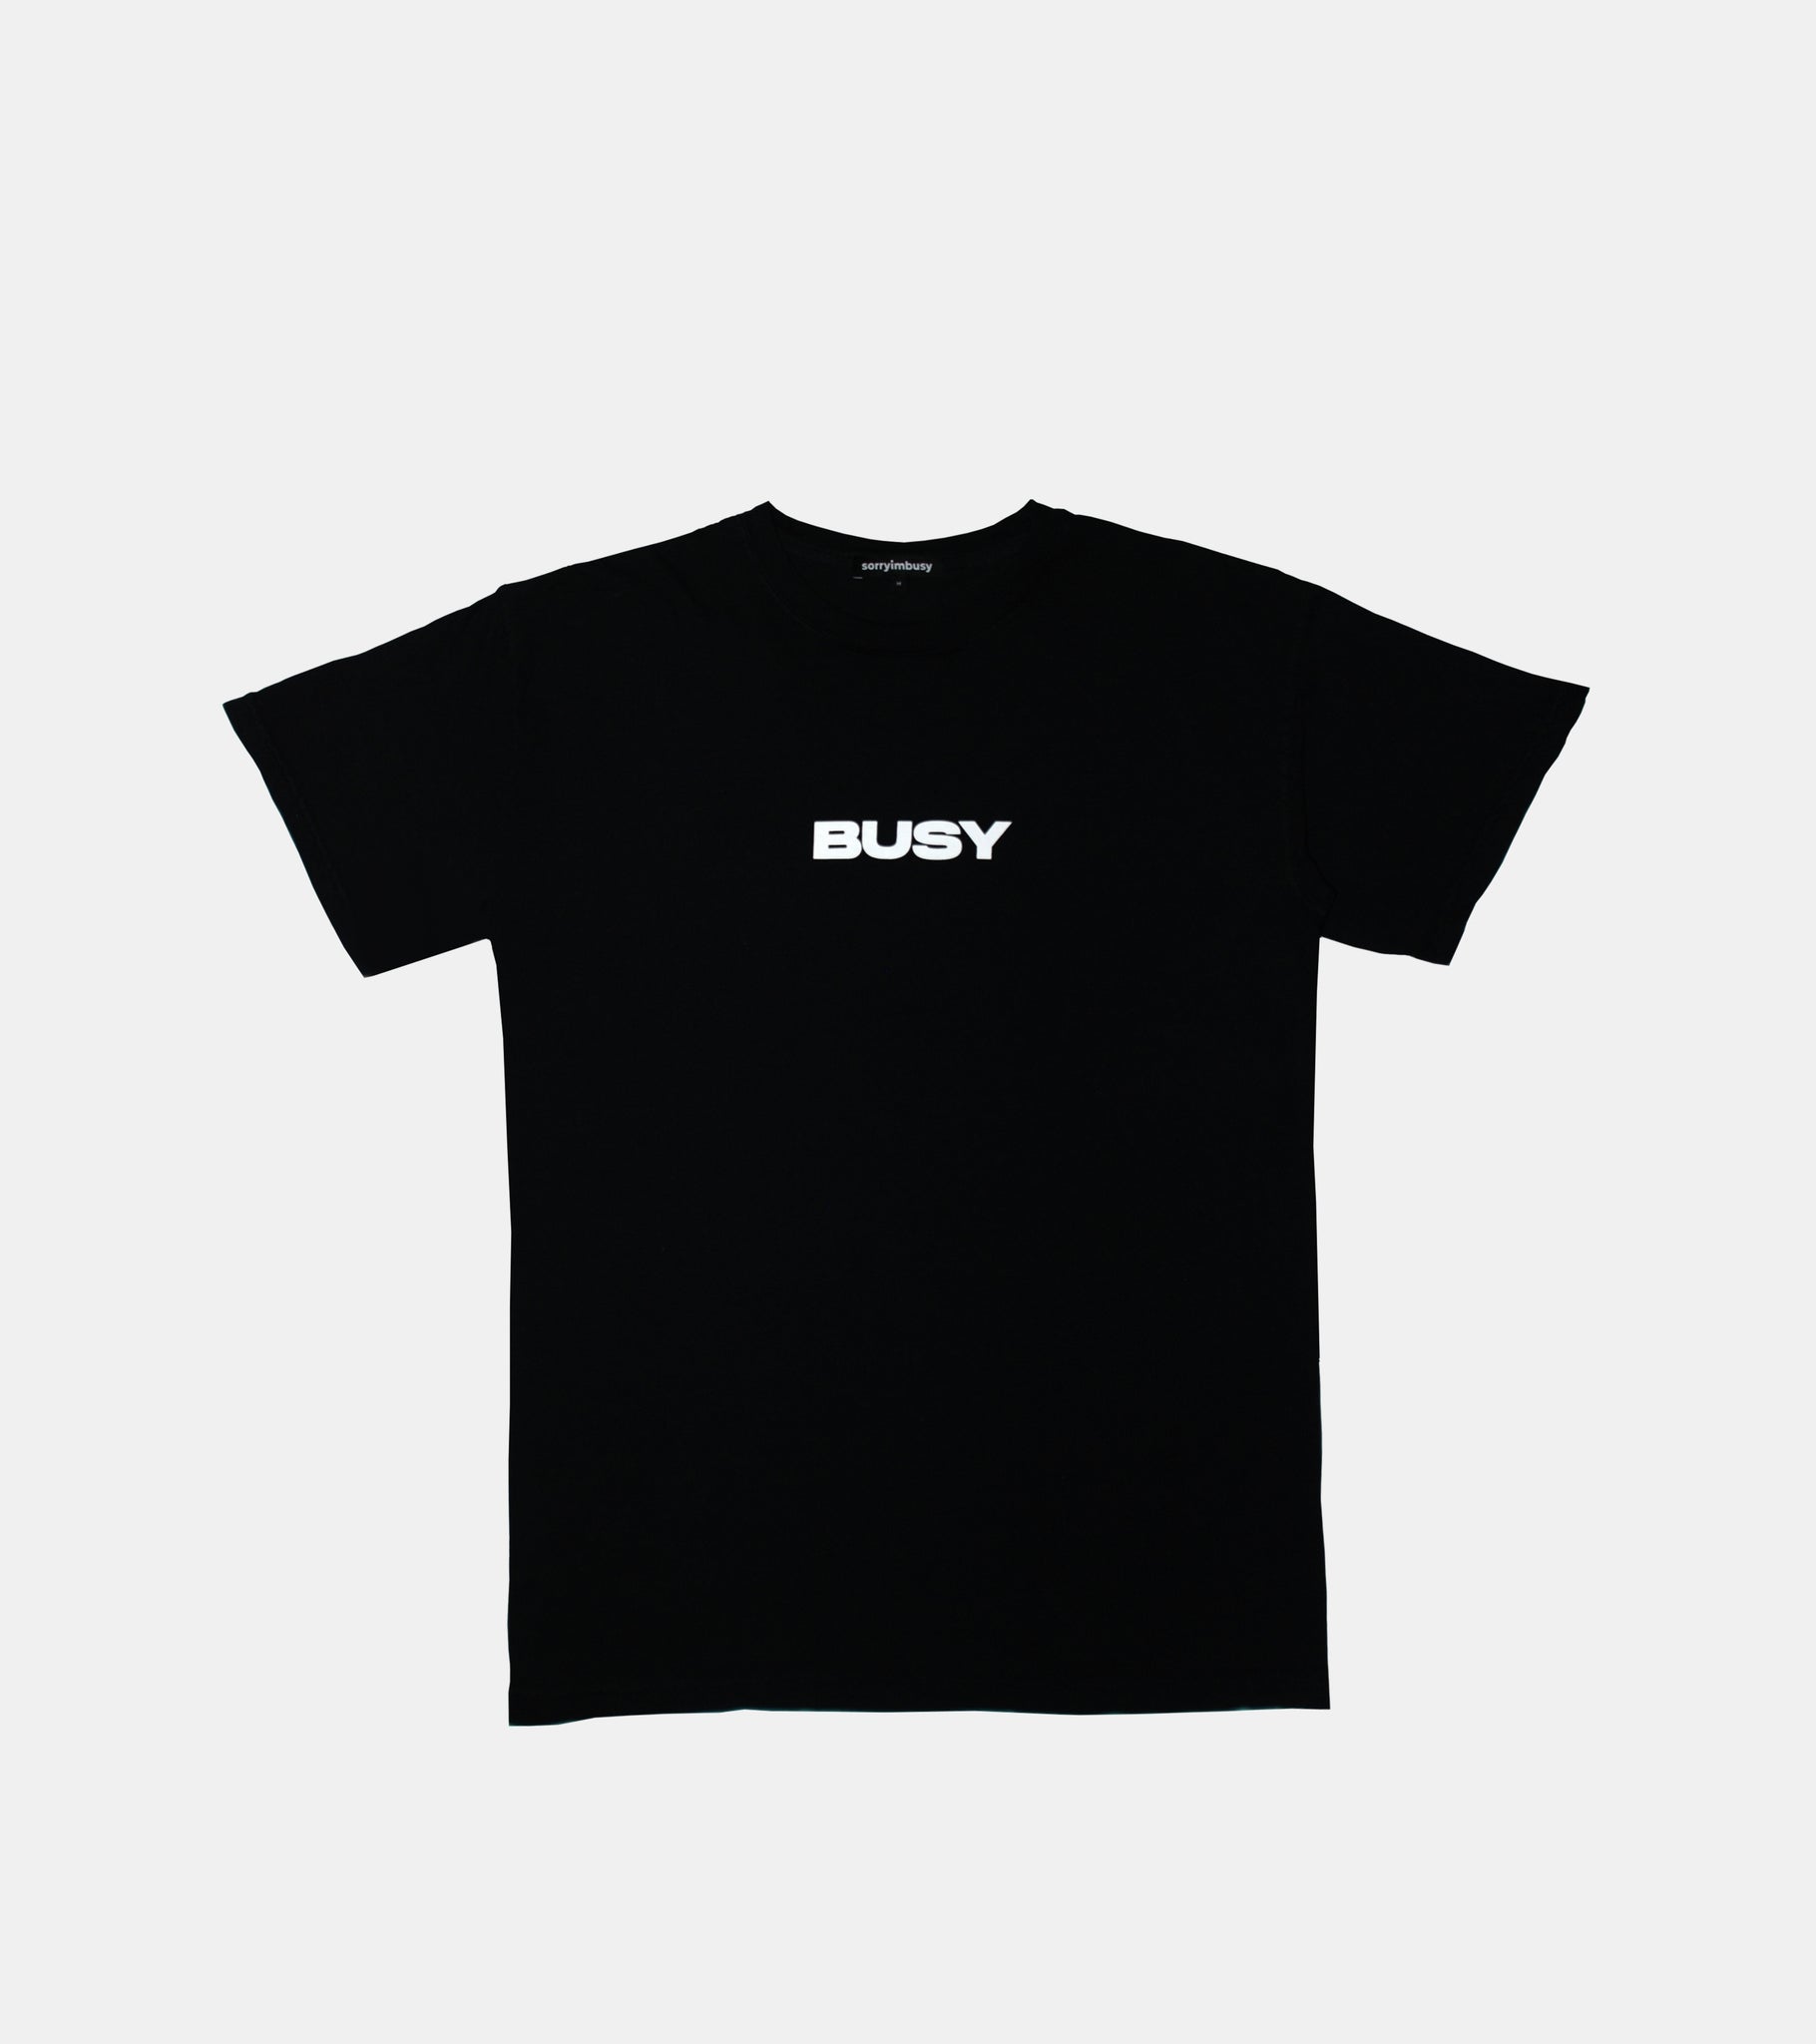 'BUSY' T-Shirt - Black - SORRYIMBUSY